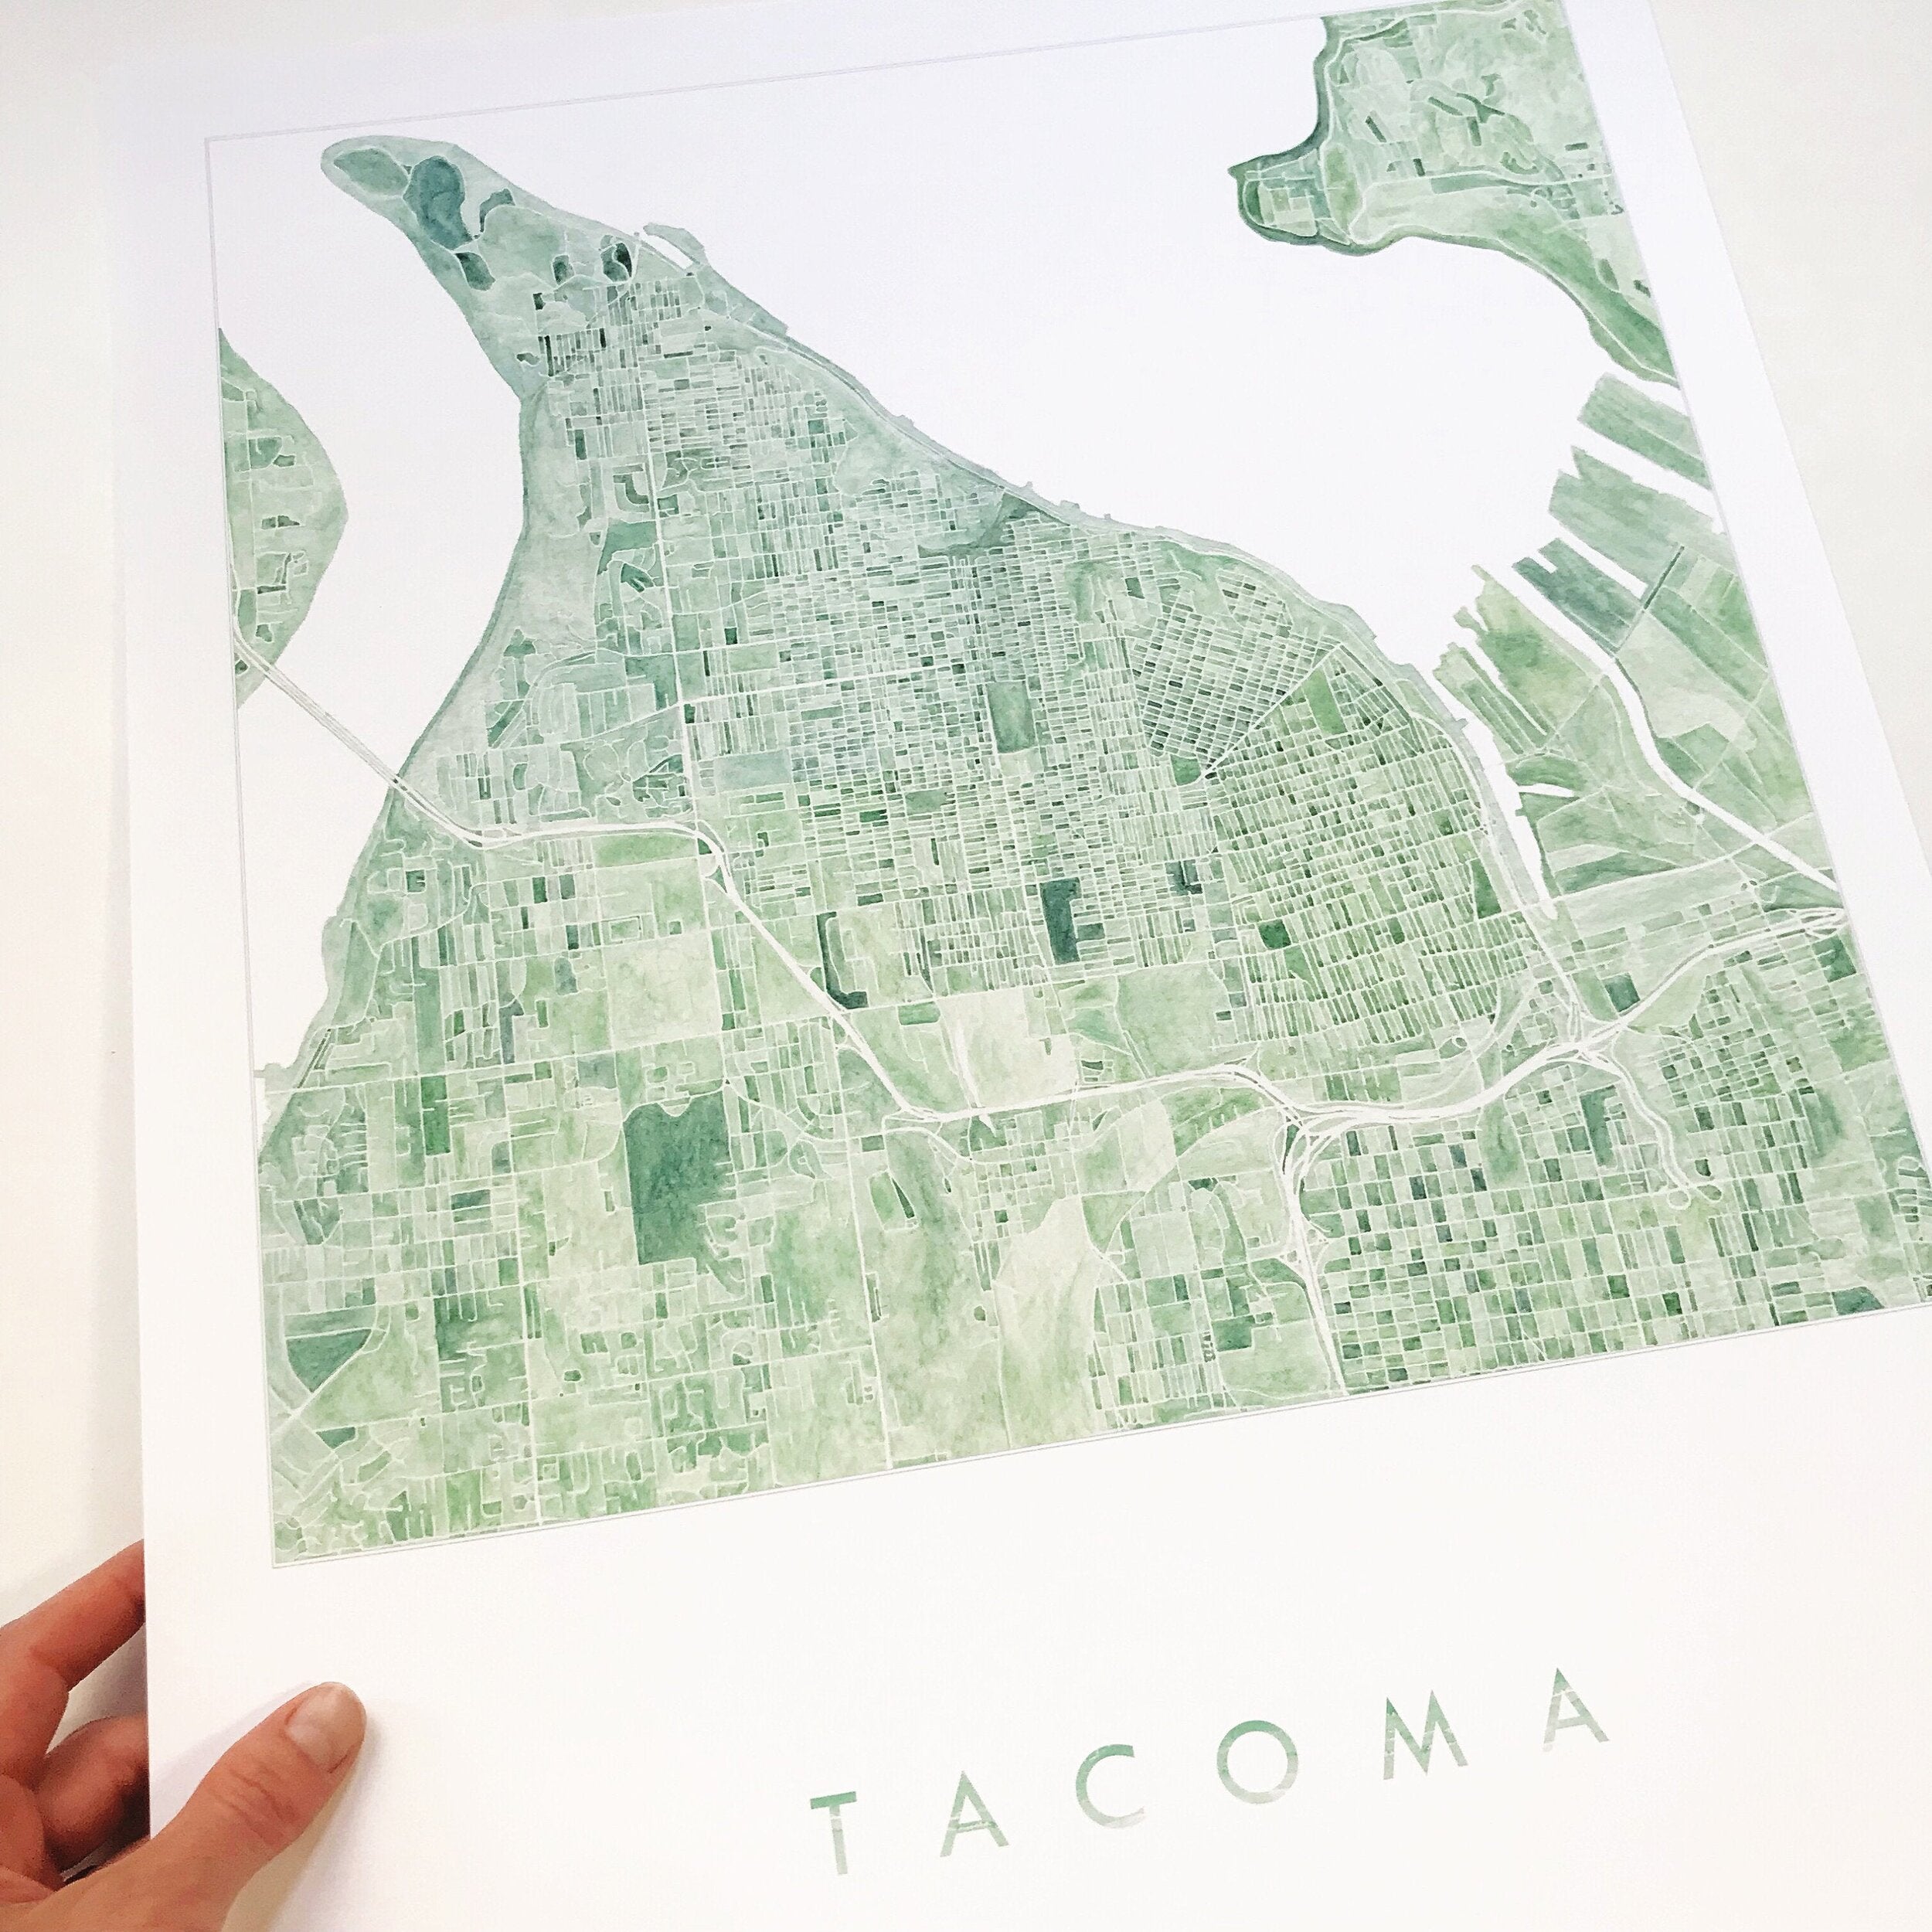 TACOMA Watercolor City Blocks Map: PRINT